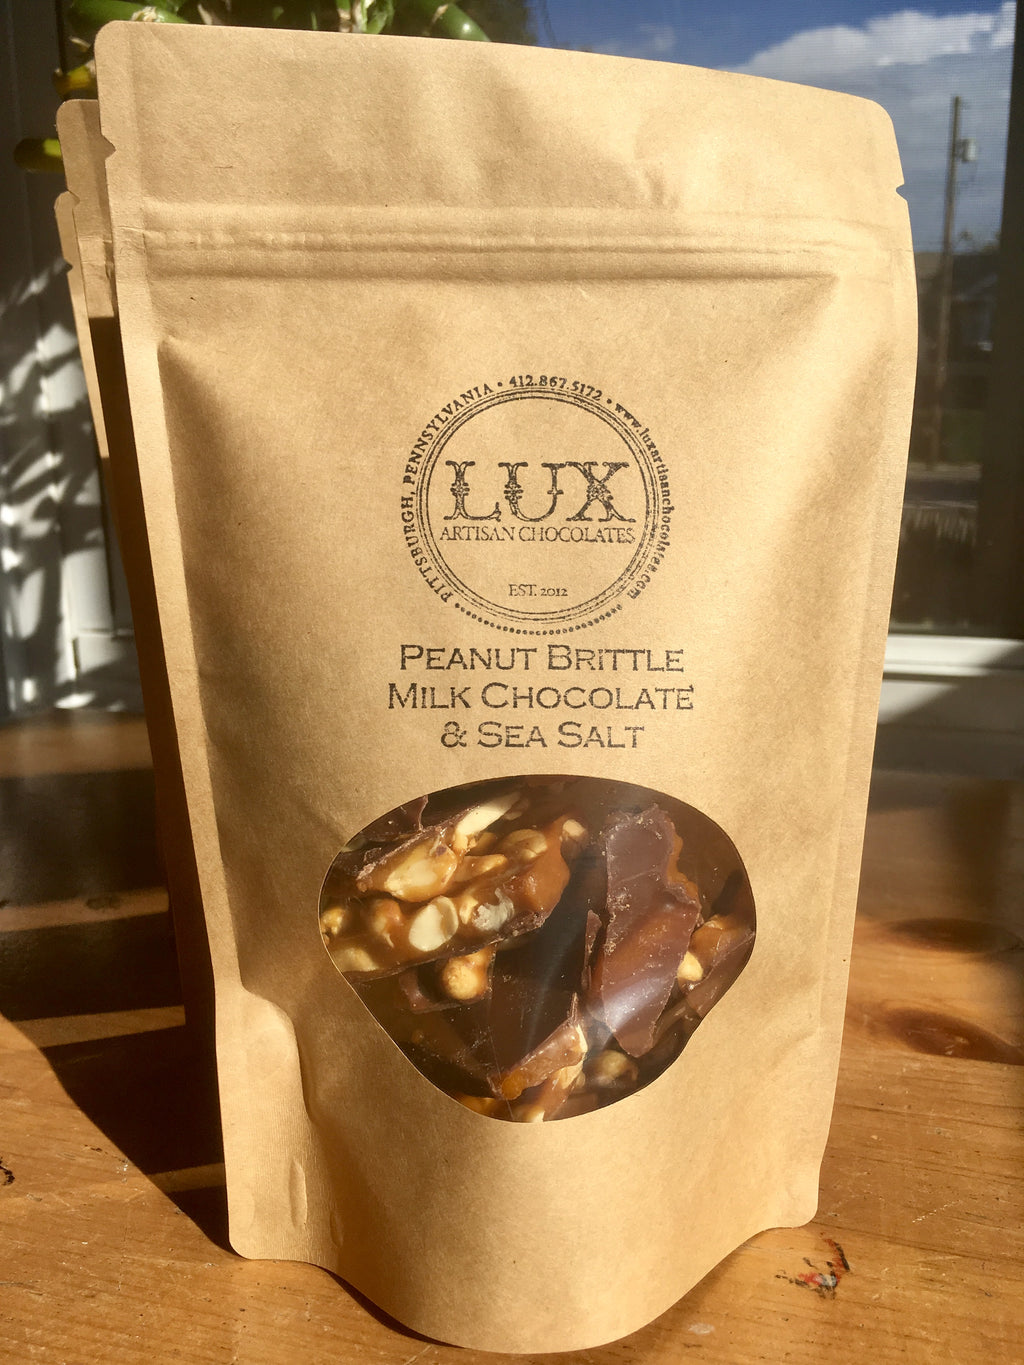 Peanut Brittle - Half Pound Bag (Milk Chocolate)